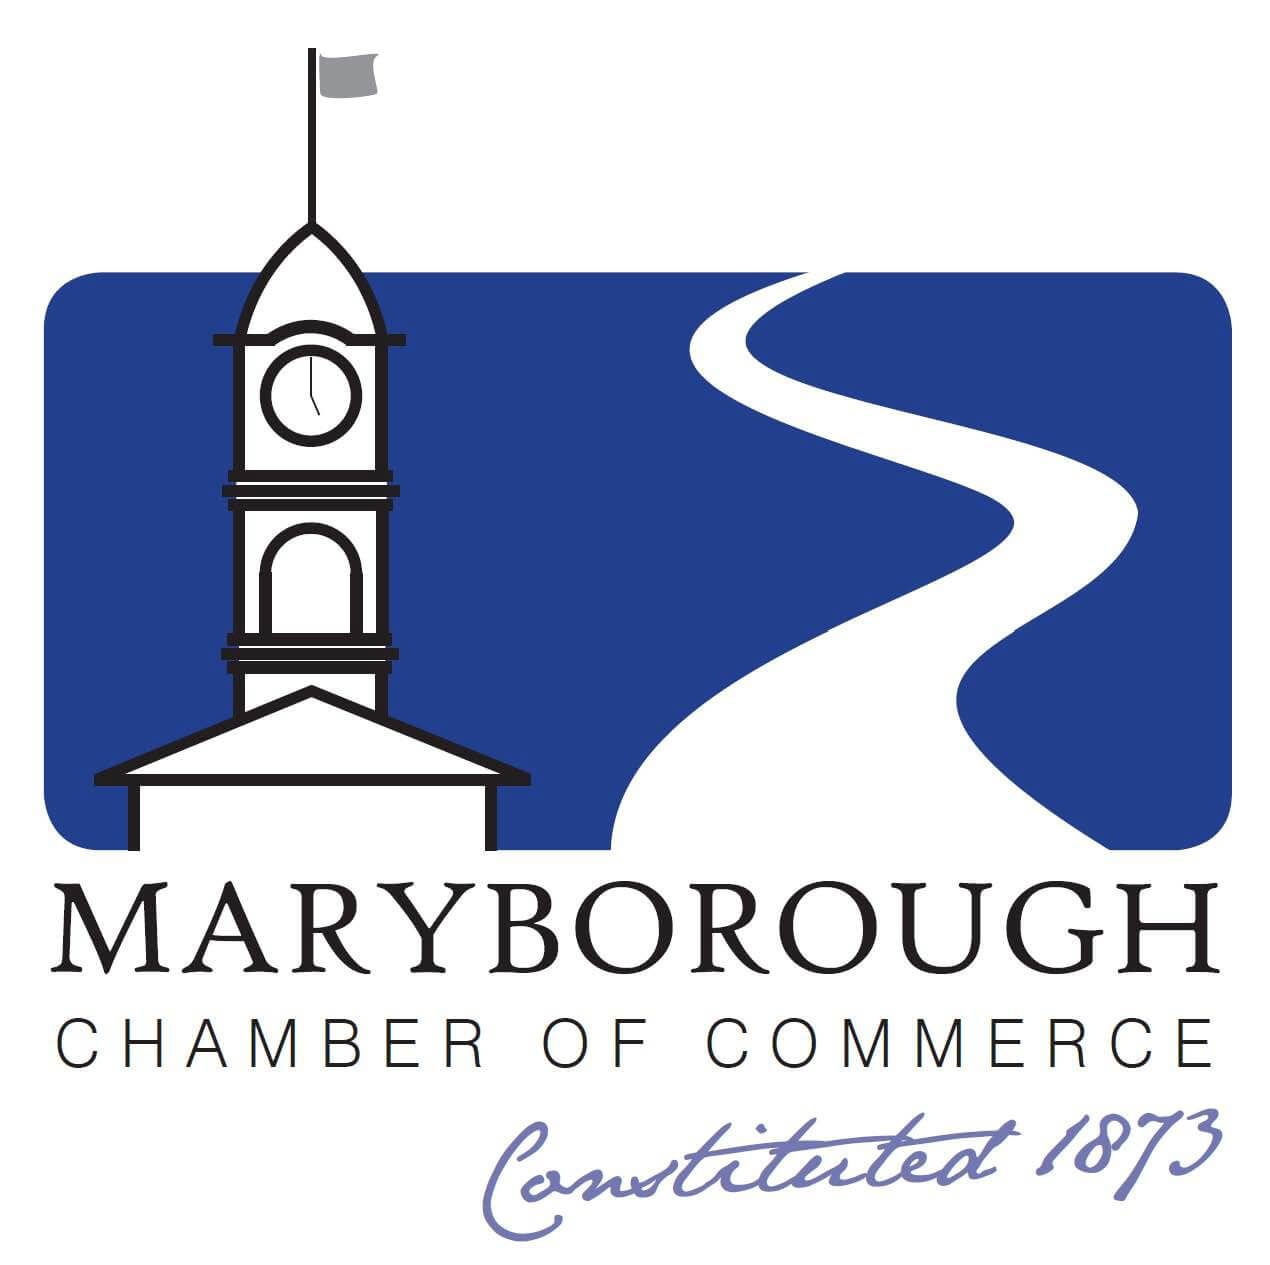 Maryborough Chamber of Commerce